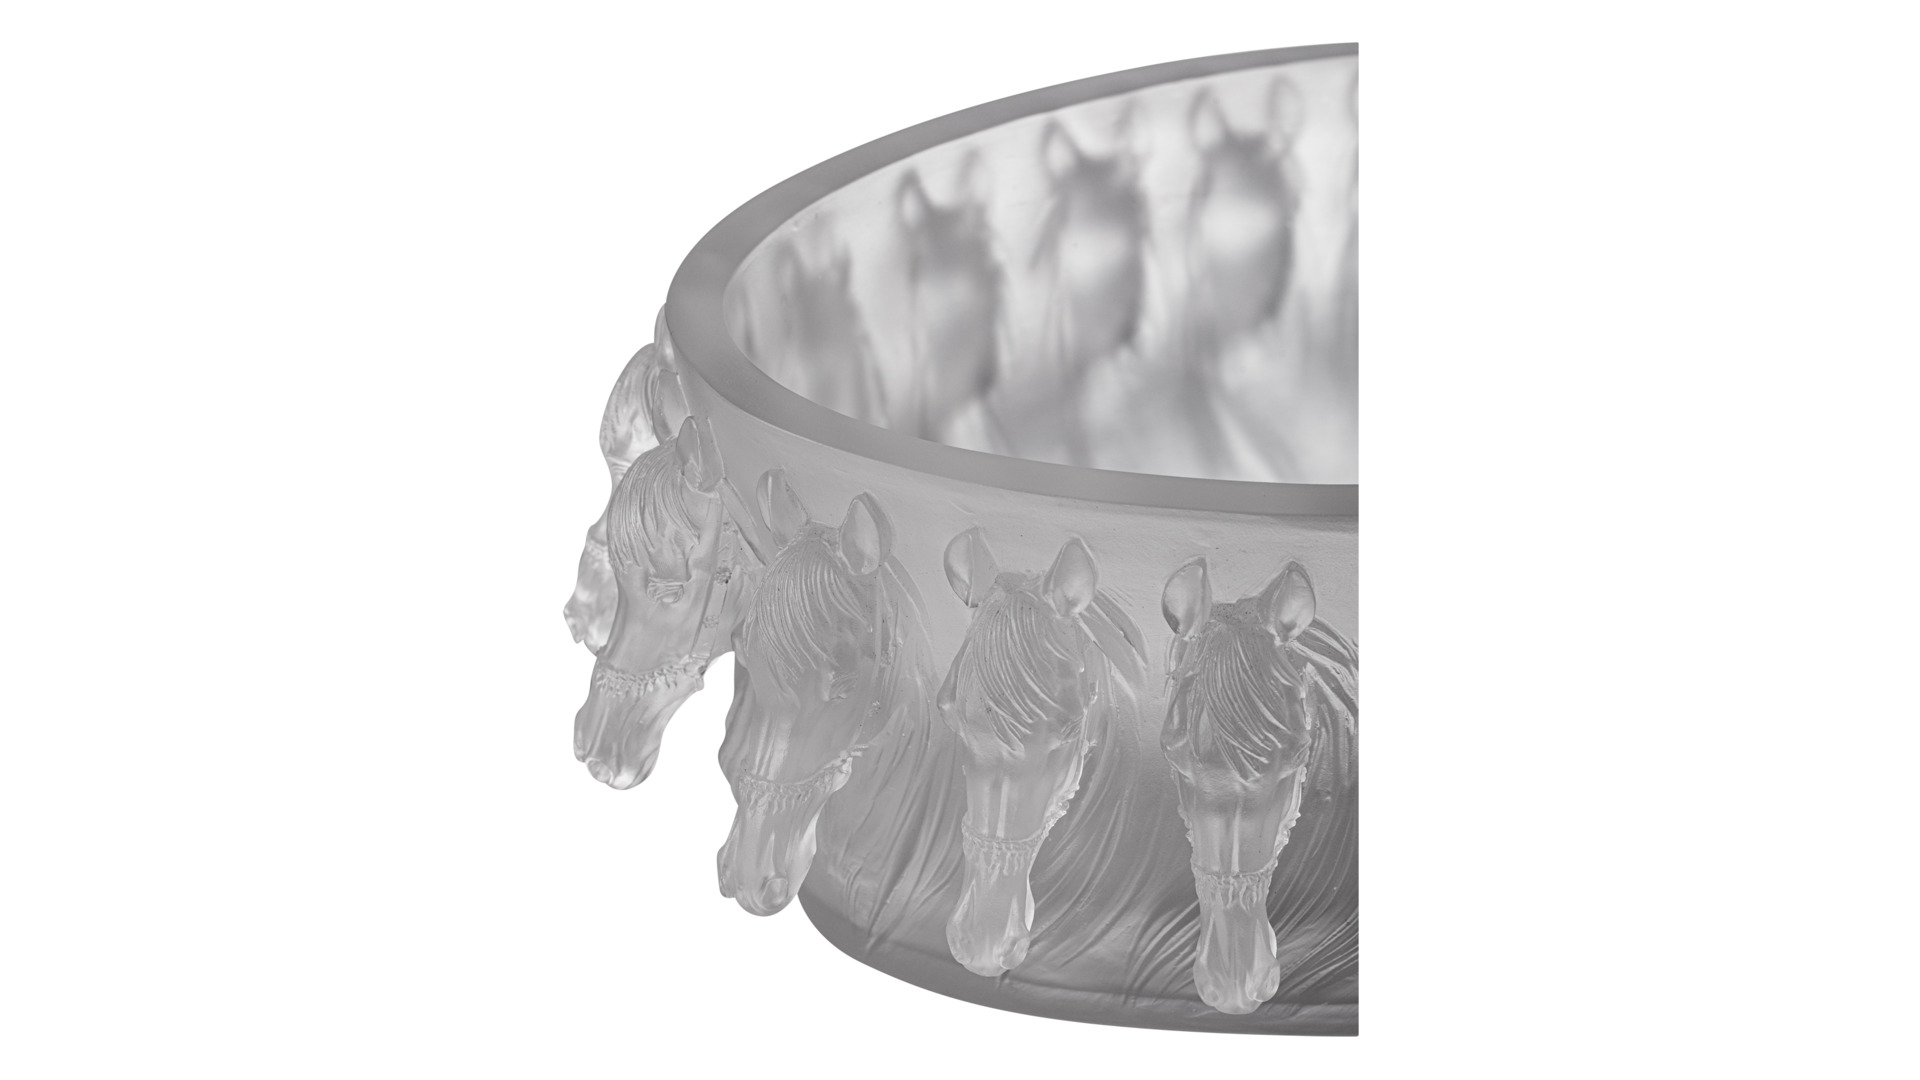 Чаша овальная Cristal de Paris Королевская лошадь 40см, сатин